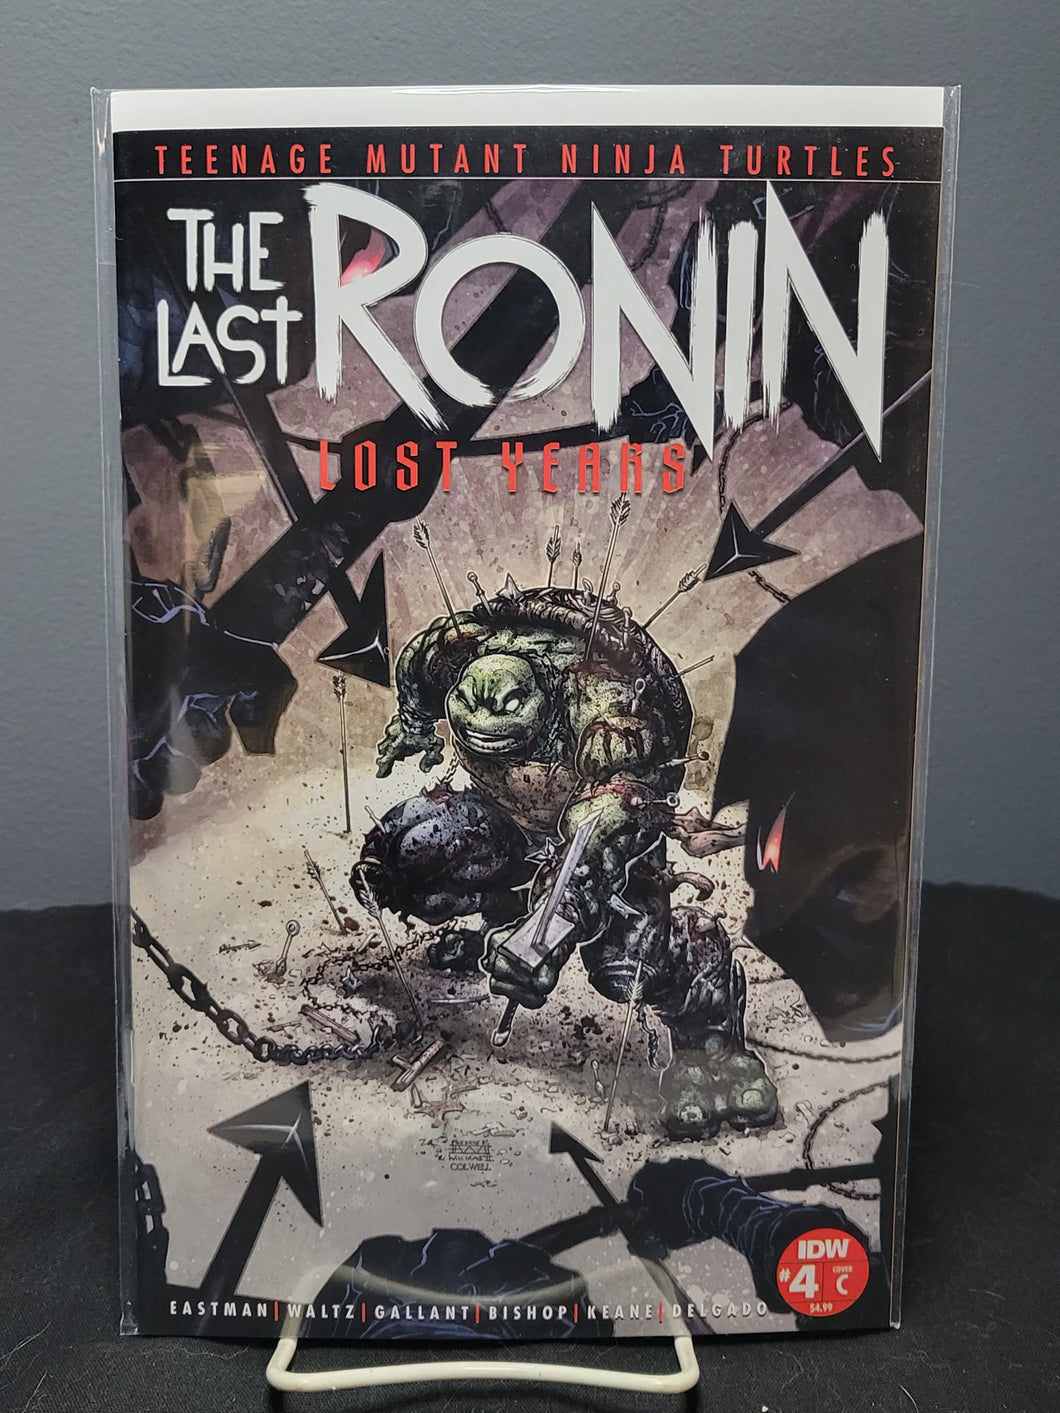 Teenage Mutant Ninja Turtles The Last Ronin Lost Years #4 Variant